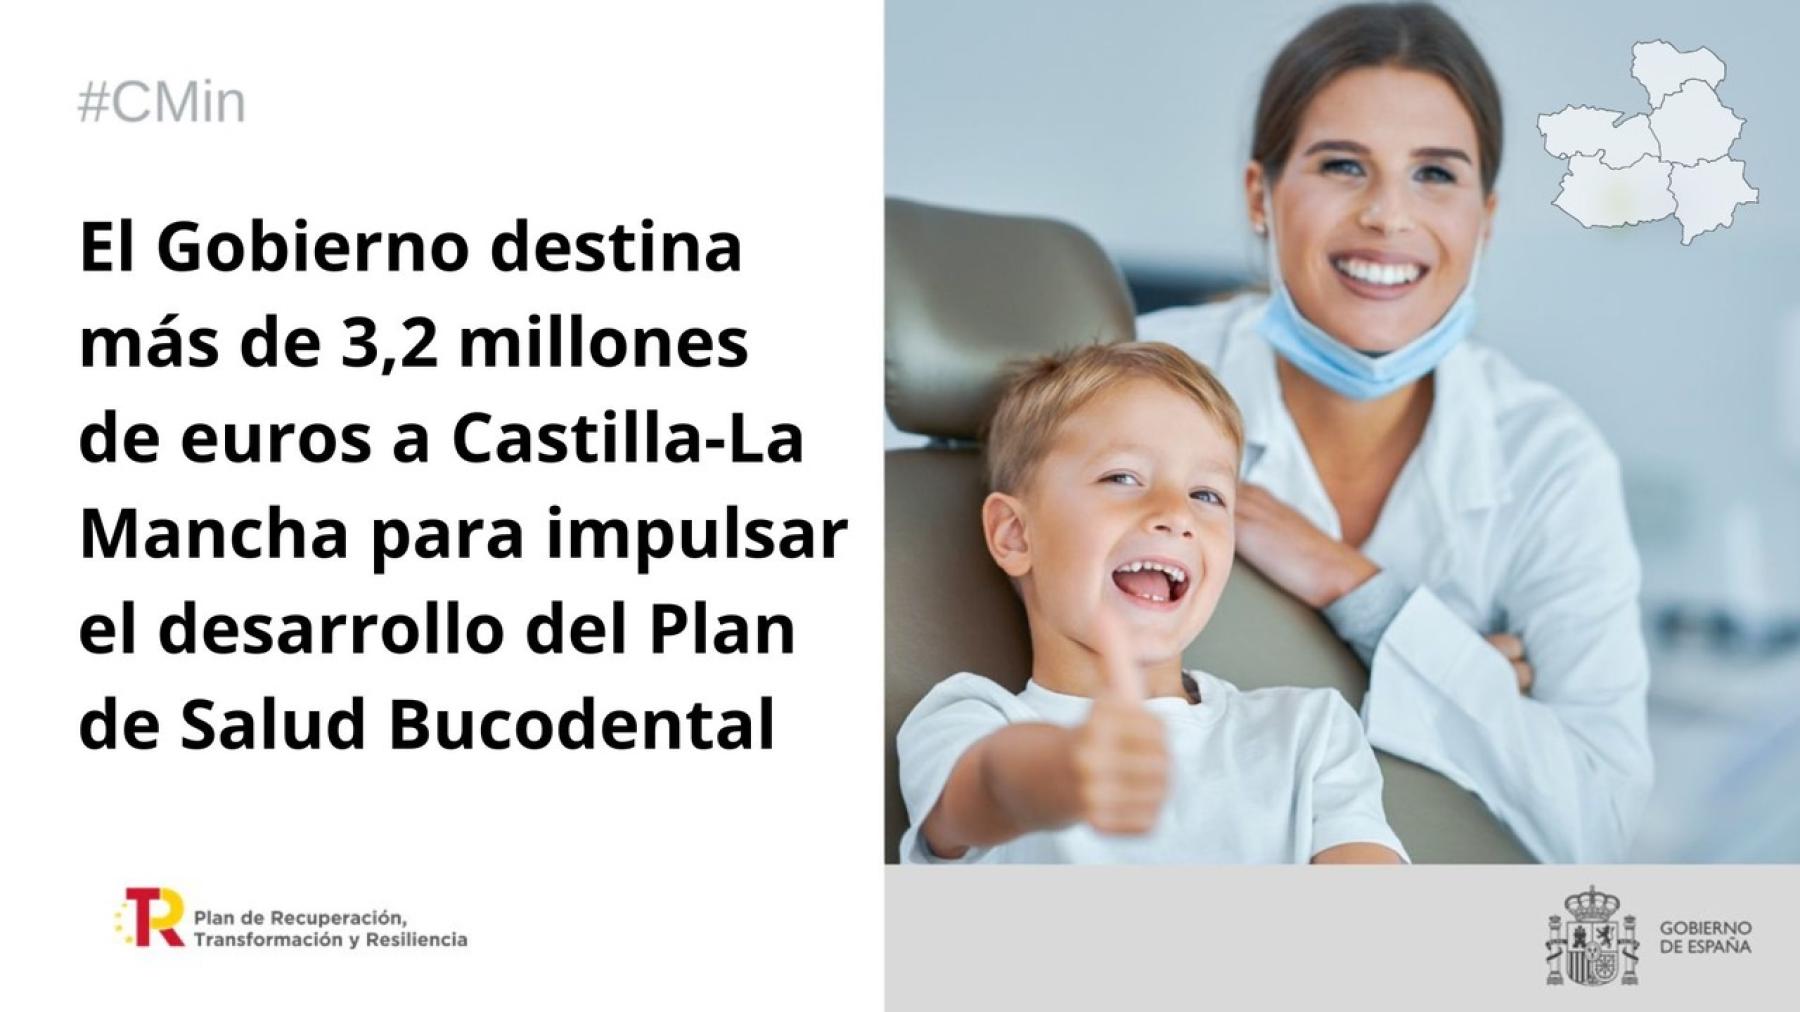 El Gobierno destina más de 3,2 millones de euros a Castilla-La Mancha para impulsar el desarrollo del Plan de Salud Bucodental